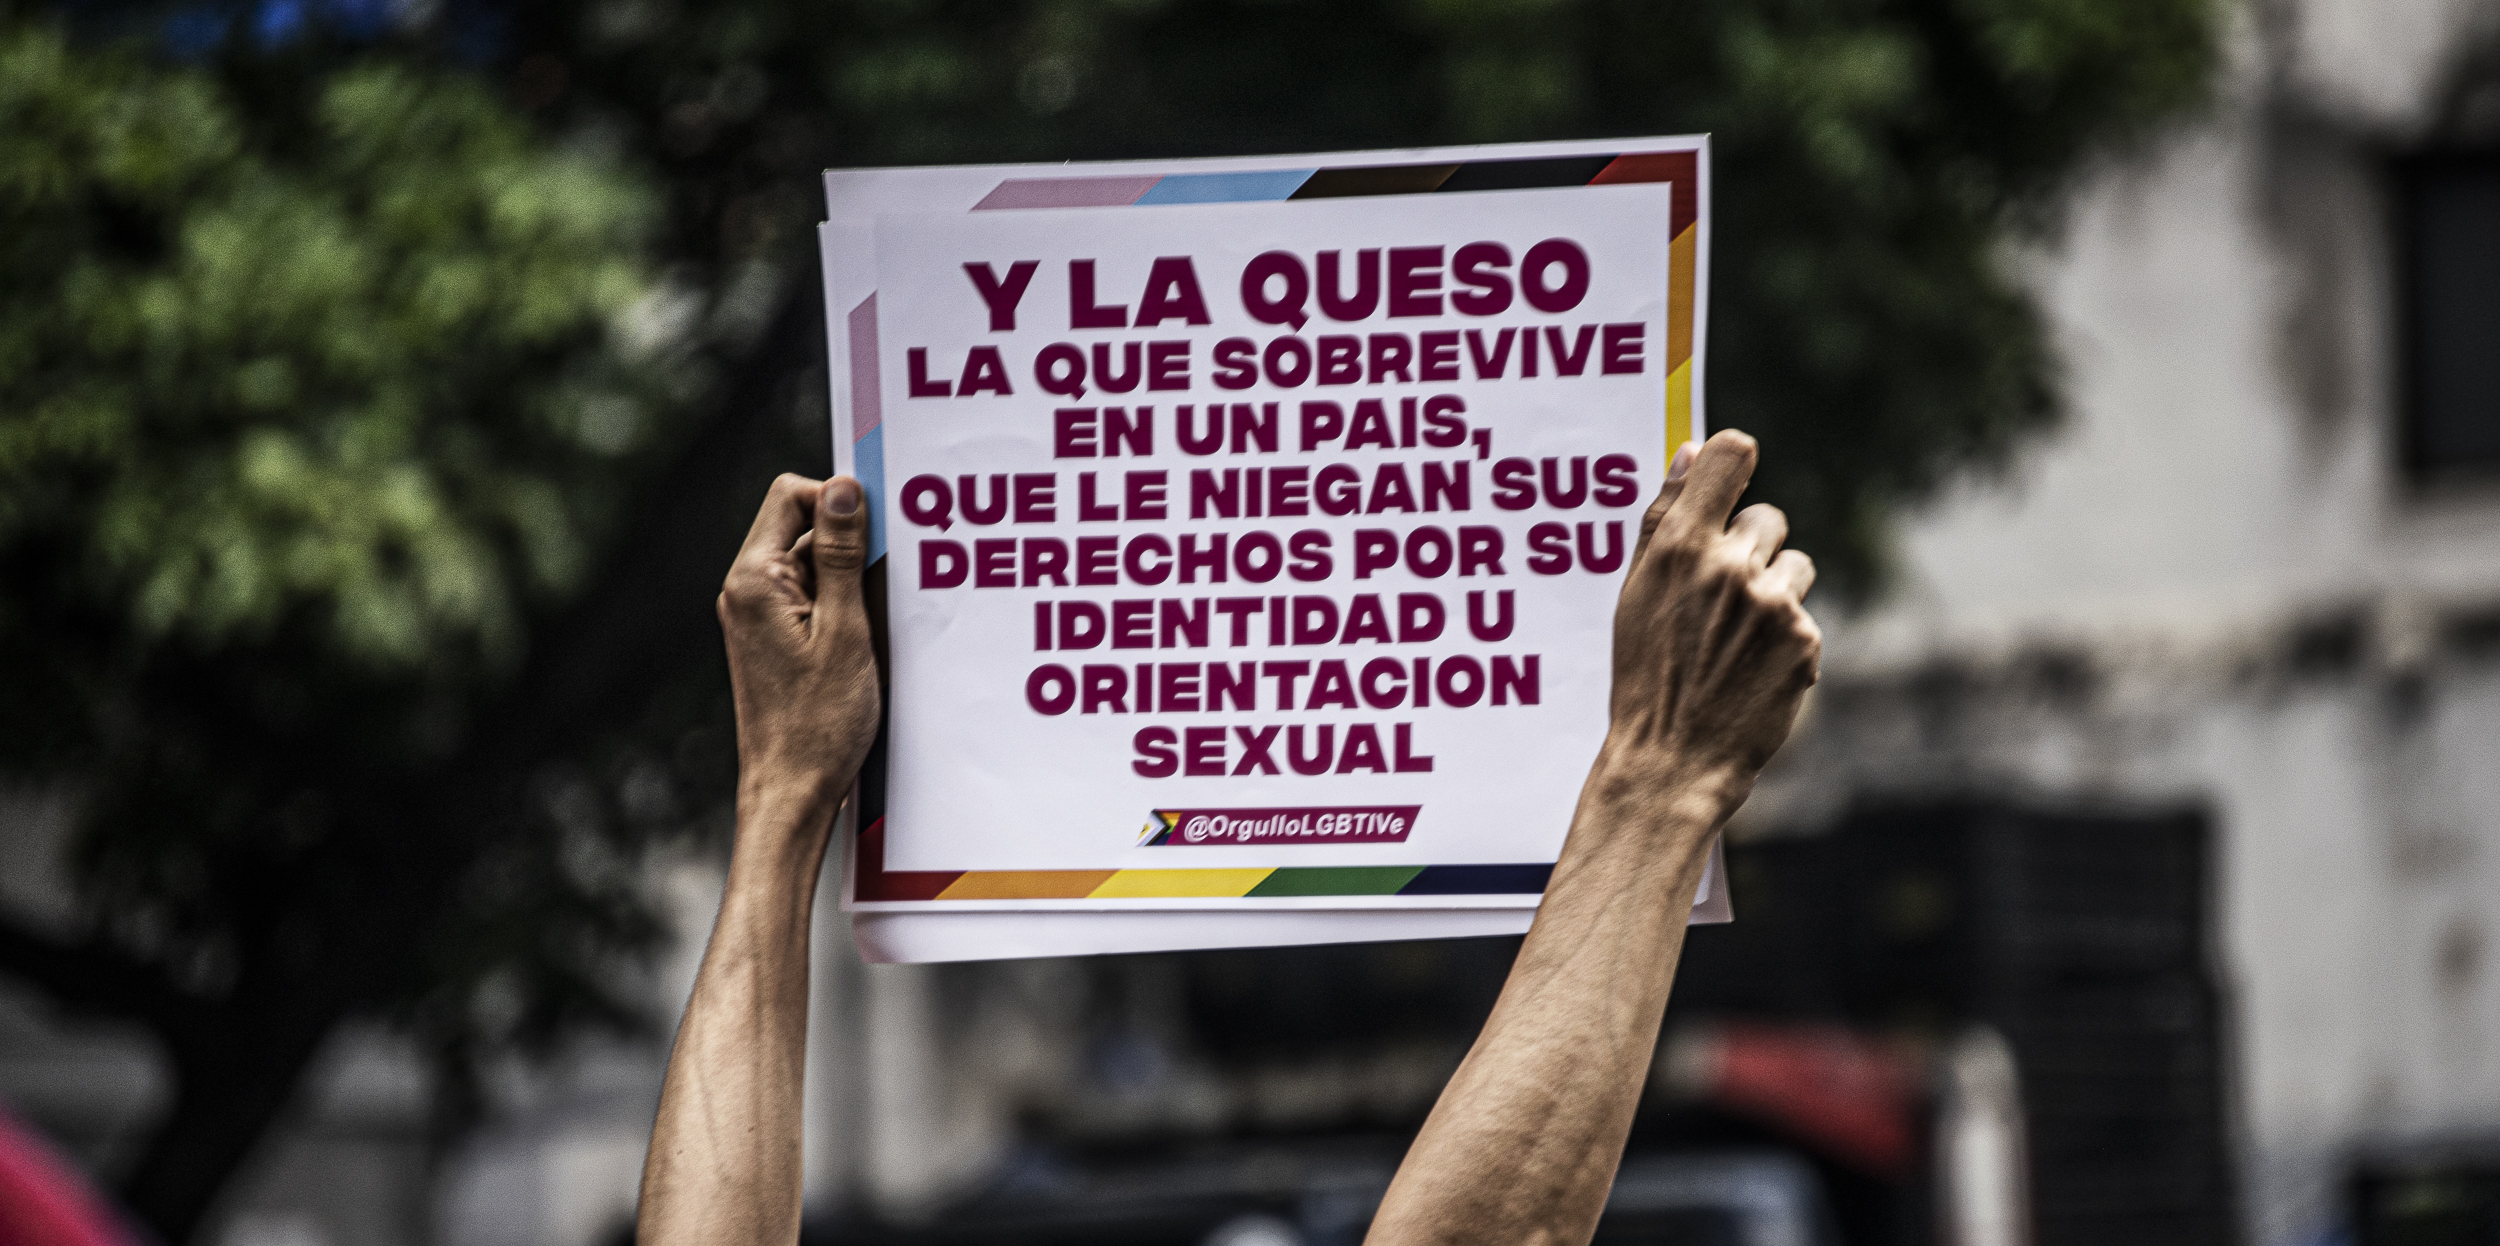 Una persona Lgbti sostiene una pancarta referente a la negación de derechos a esta población en Venezuela - Marcha del orgullo Lgbti en Caracas, Venezuela, 2023